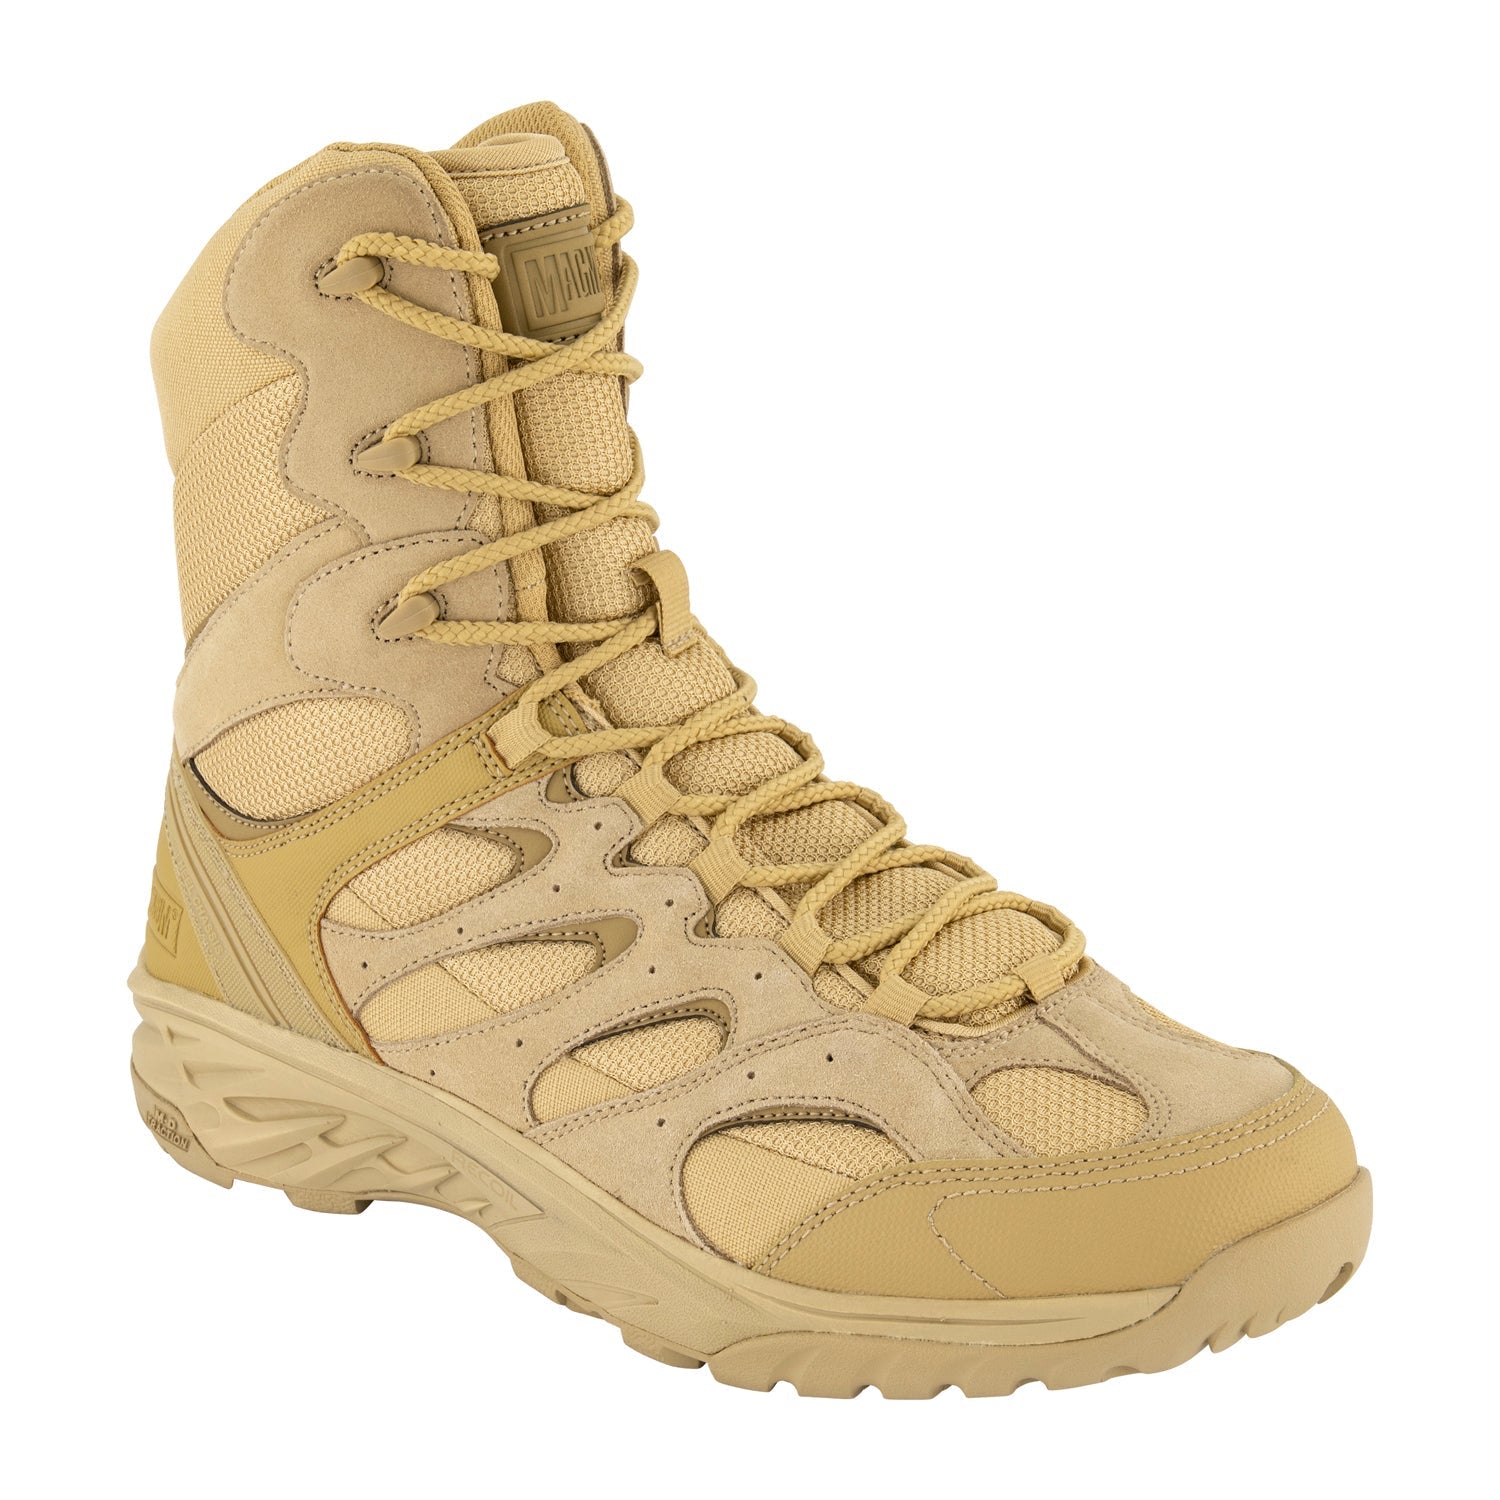 Magnum Wild Fire Tactical 8.0 Side-Zip Waterproof Boots Desert Tan Tactical Distributors Ltd New Zealand